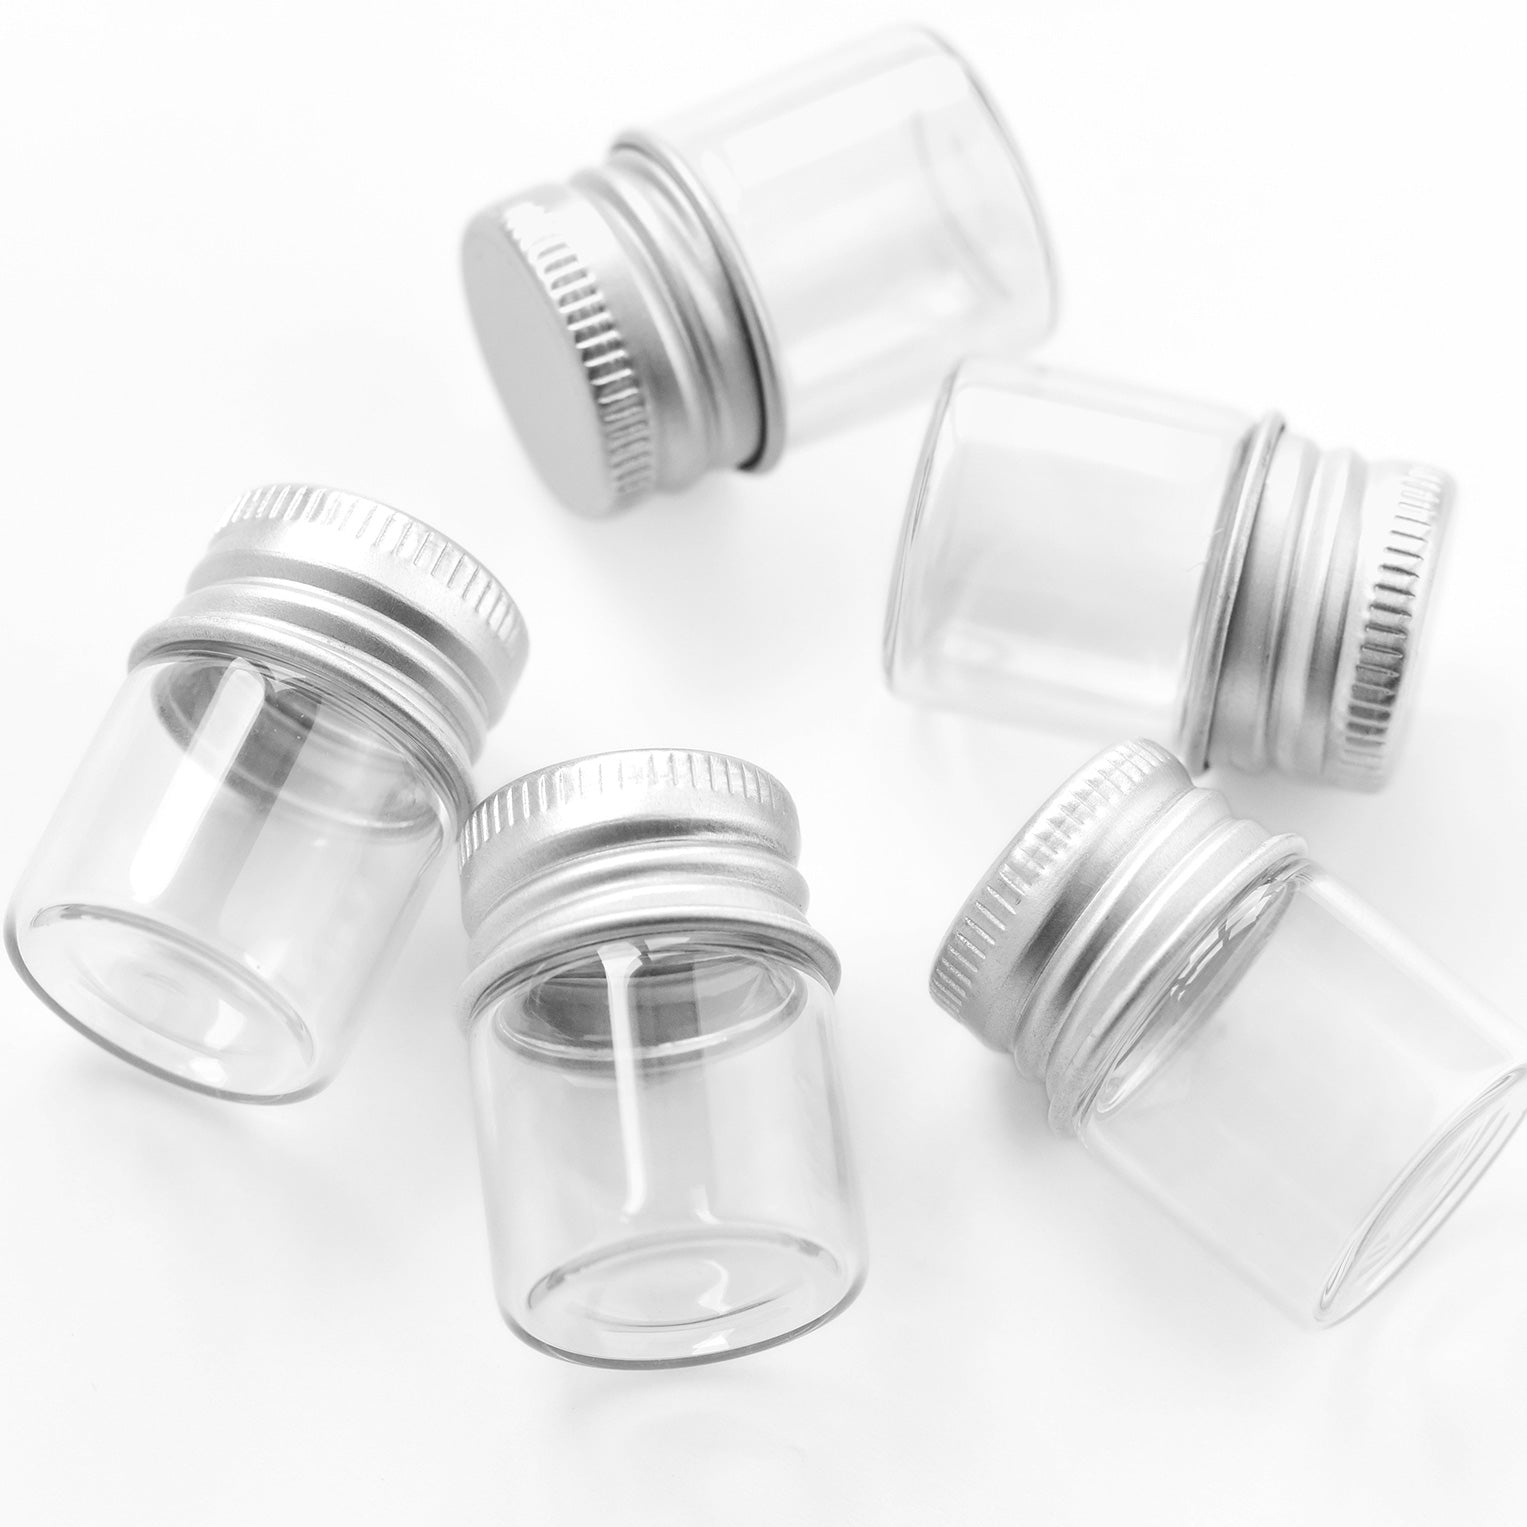 Glass Bottles With Aluminium Lids Small Mini Glass Jars - Temu